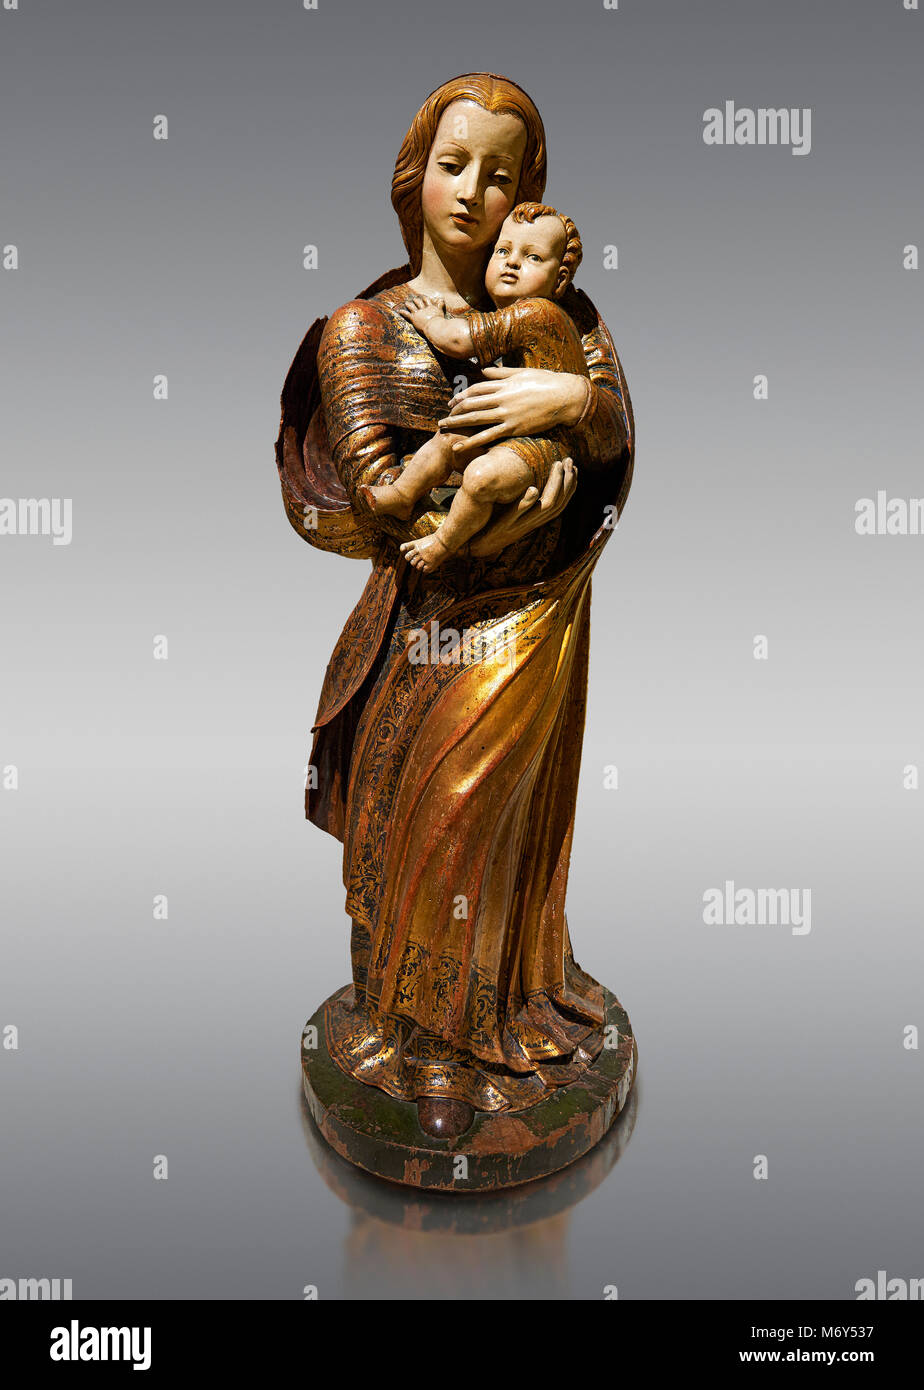 Gothic statua in legno della Madonna con il Bambino di Seguidor de Diego de  Siloe di Burgos, circa 1530-1540, tempera e foglia oro su legno, dalla  chiesa di Foto stock - Alamy